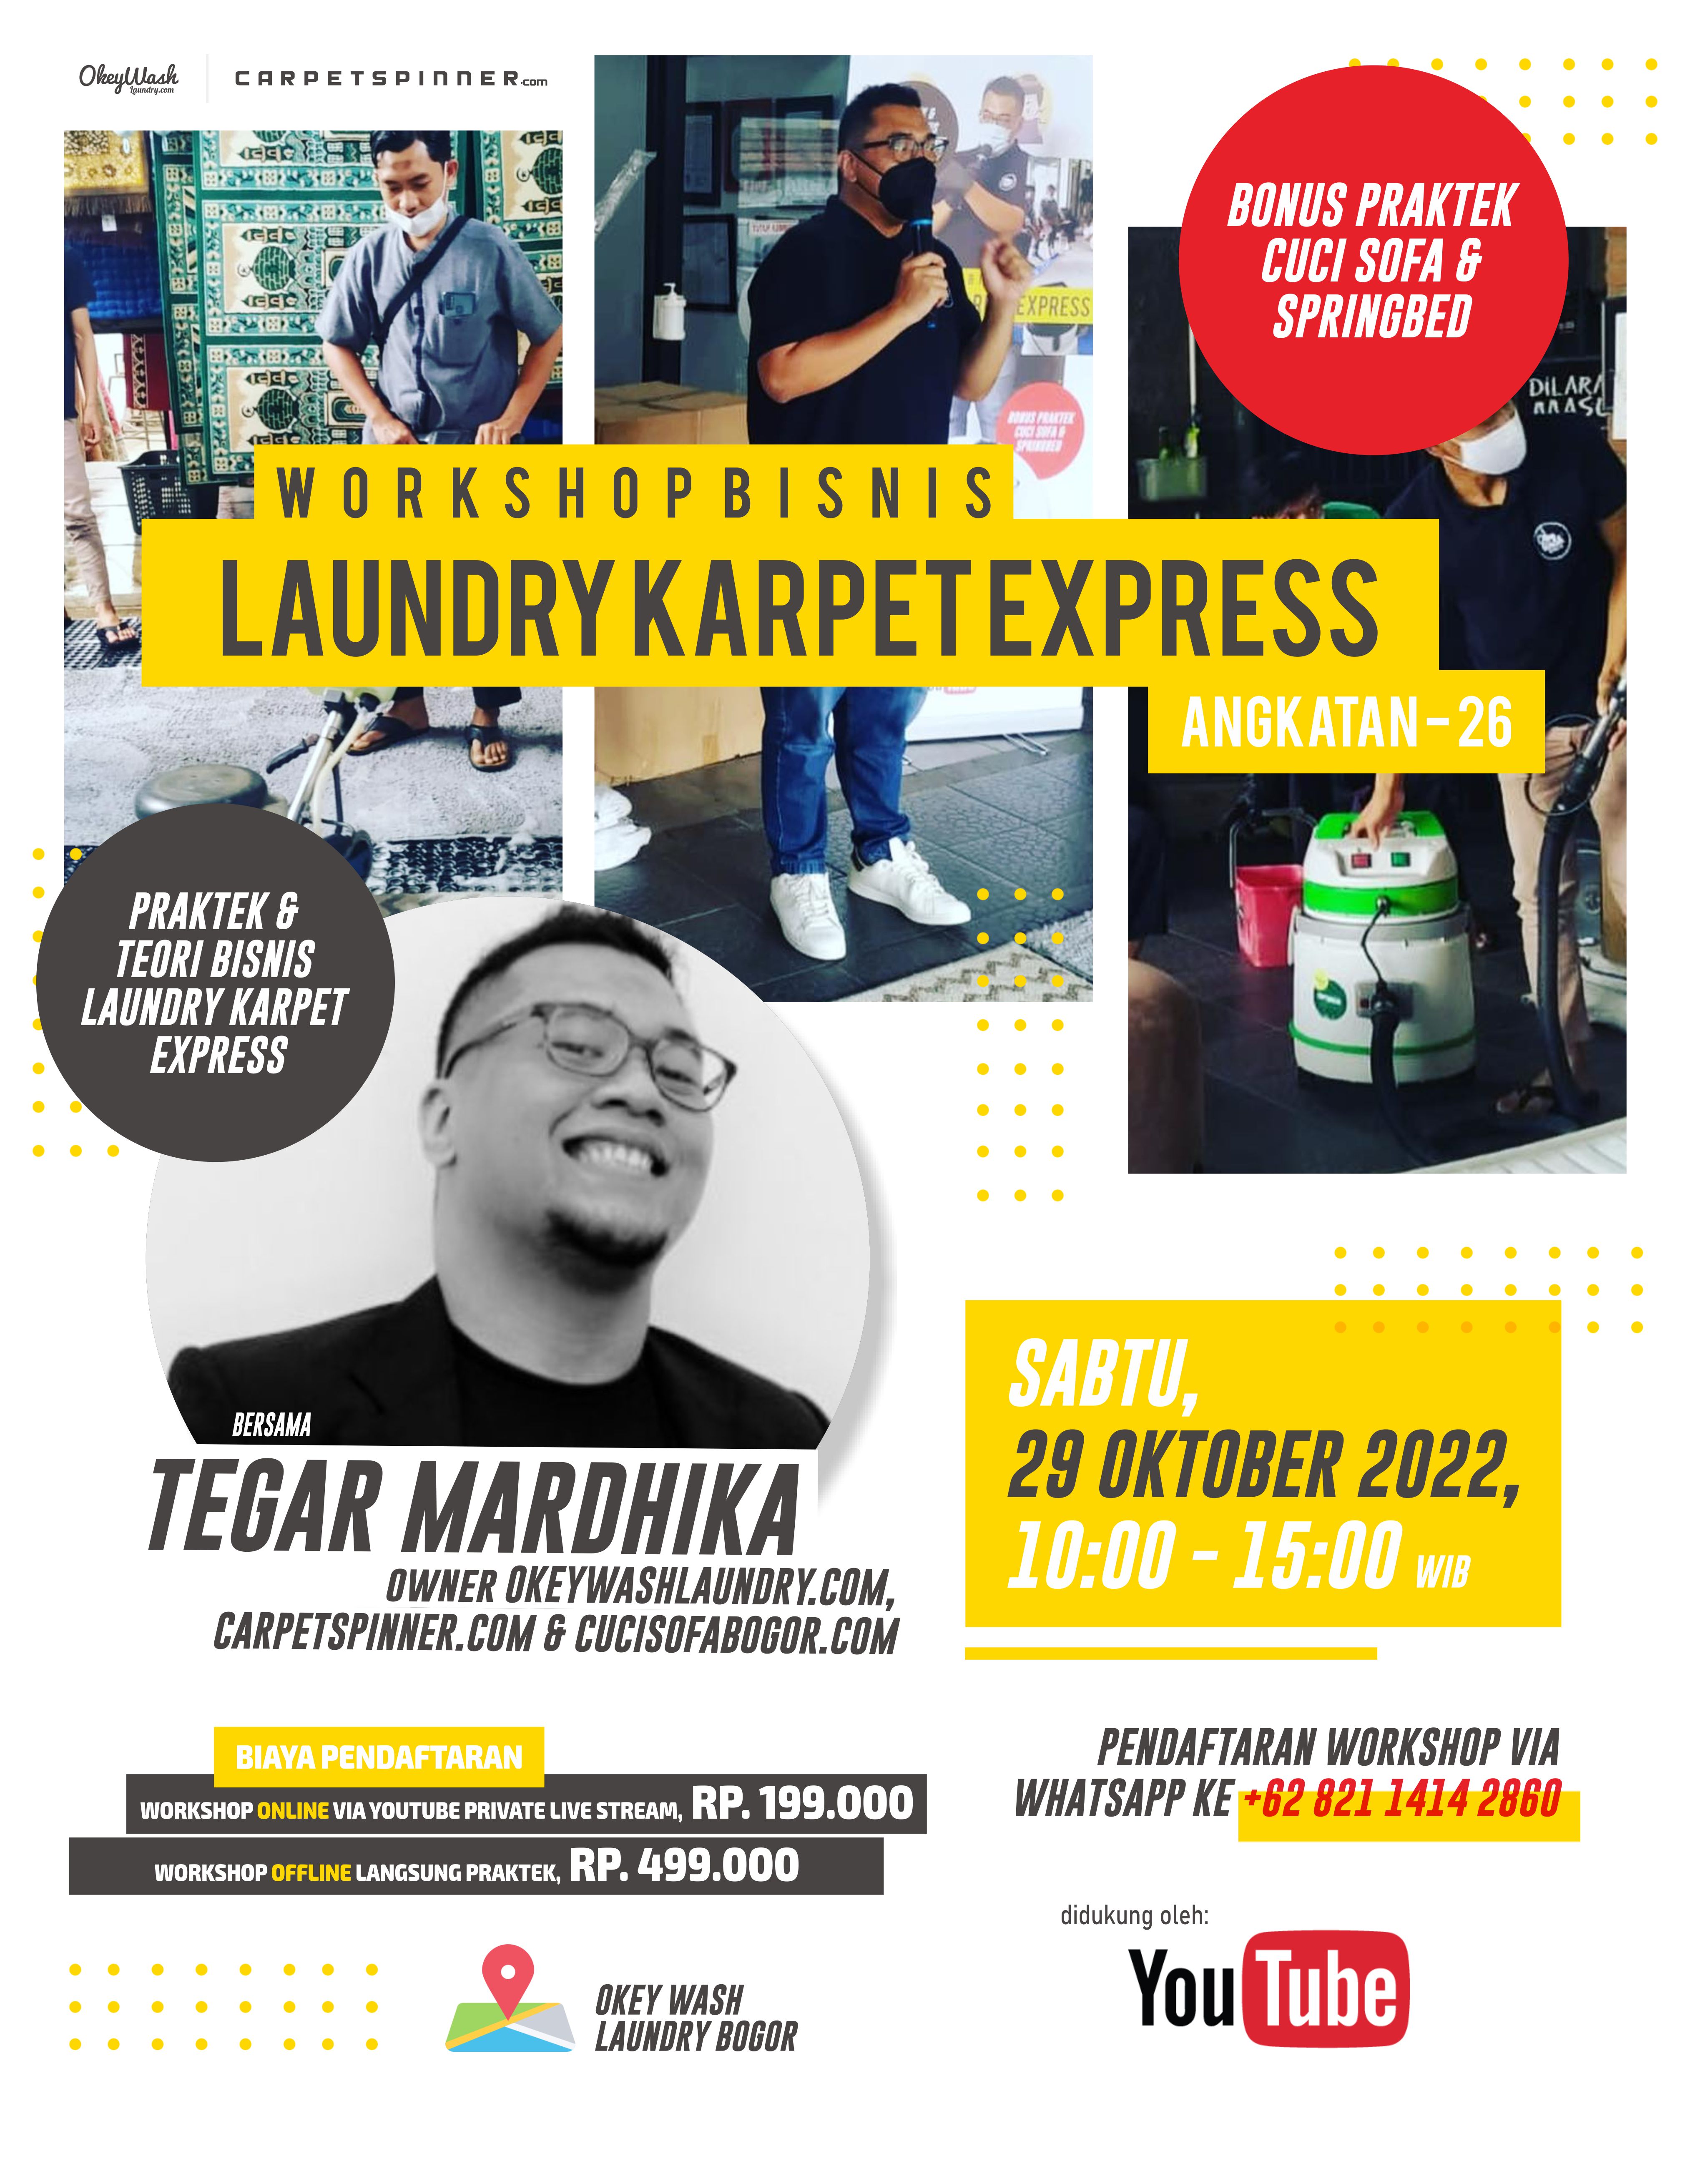 Workshop Bisnis Laundry Karpet Express, 29 Oktober 2022. Daftar Sekarang Juga Via WhatsApp ke +6282114142860!